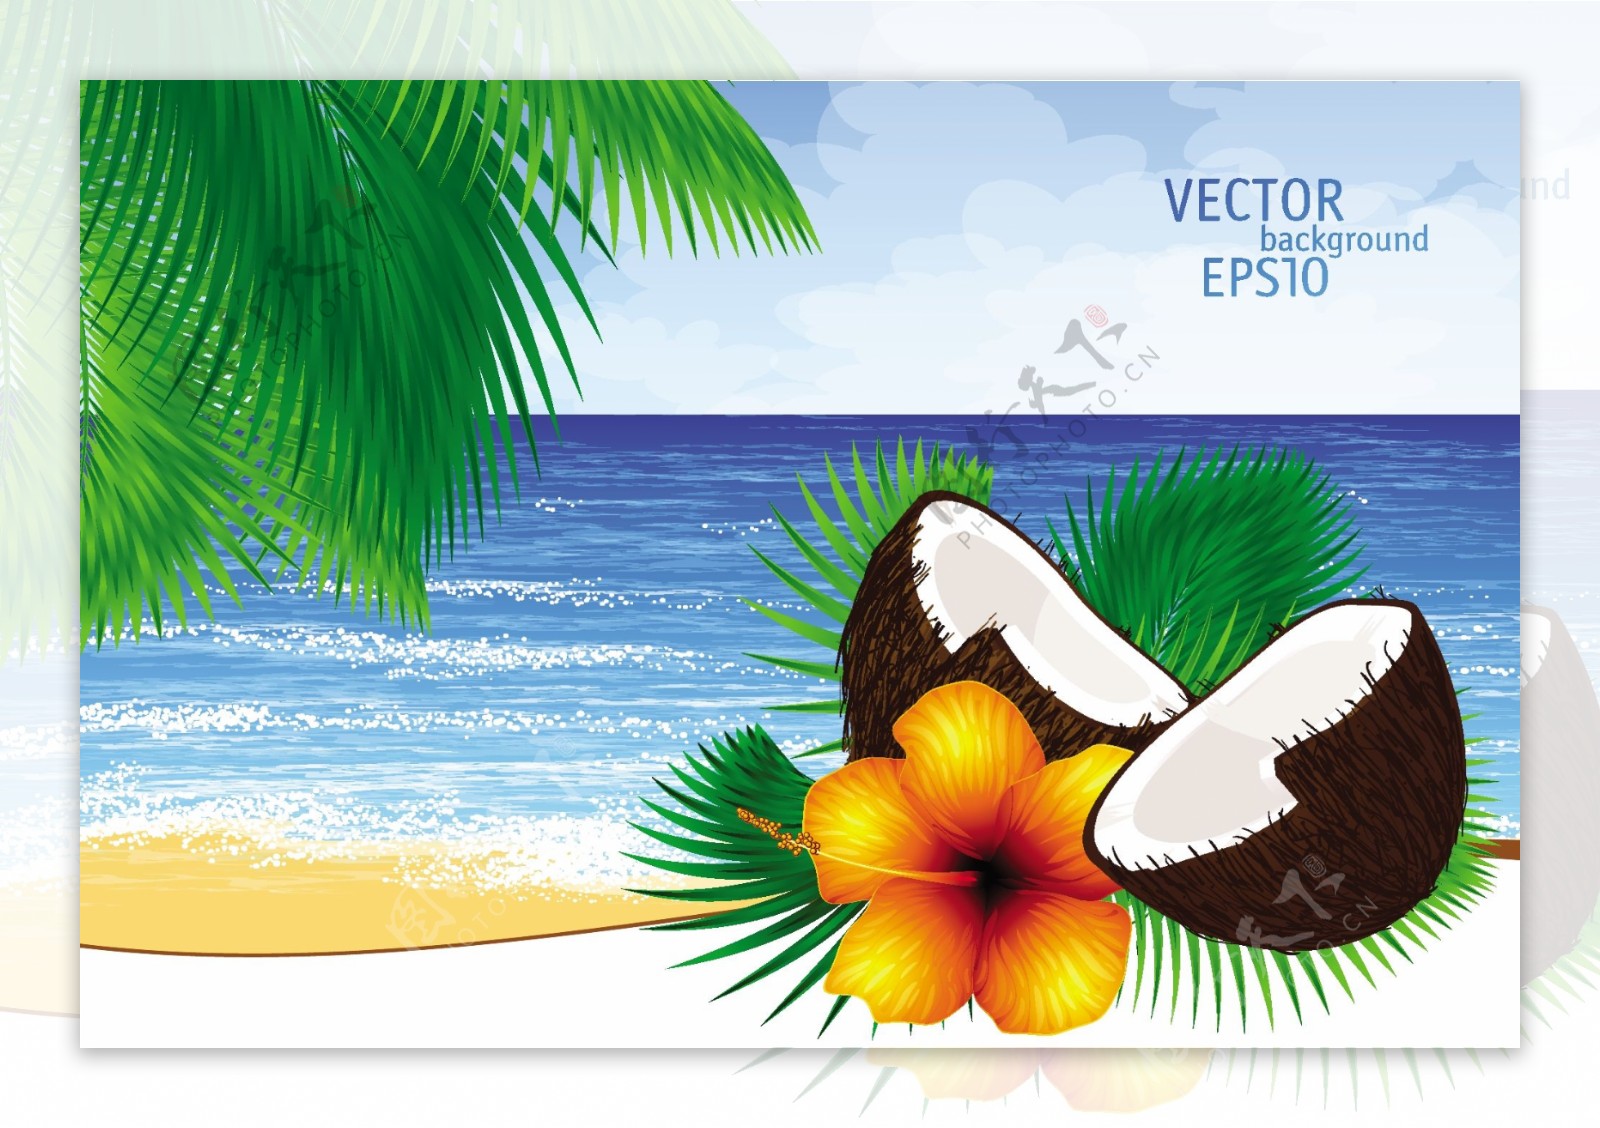 与潮汐棕榈天堂岛背景矢量叶子椰子鸡尾酒和热带花卉